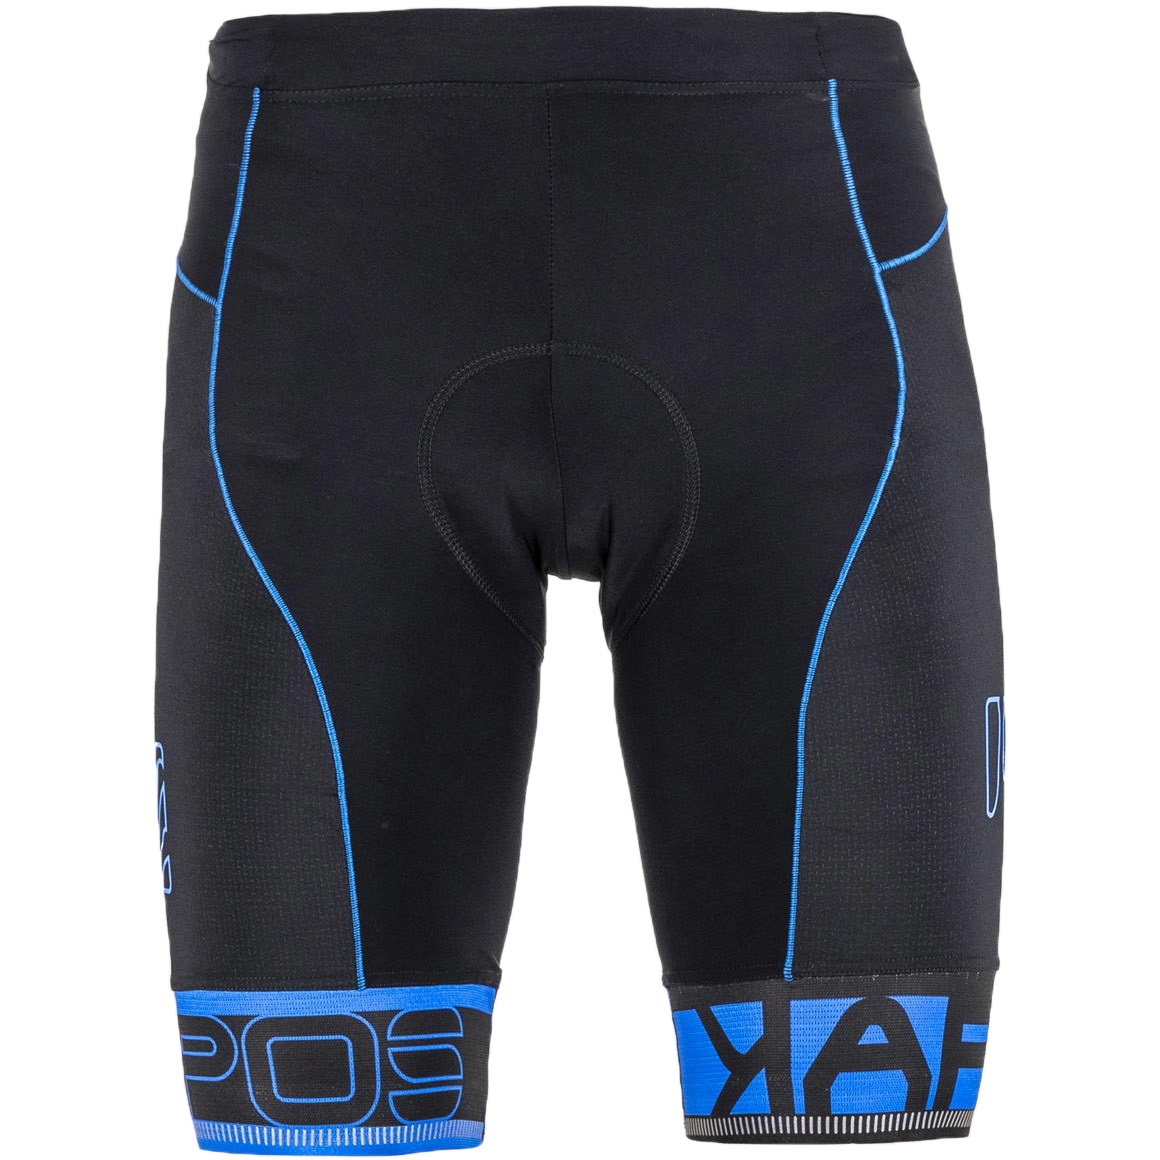 Produktbild von Karpos Verve MTB-Shorts Herren - black/indigo blue